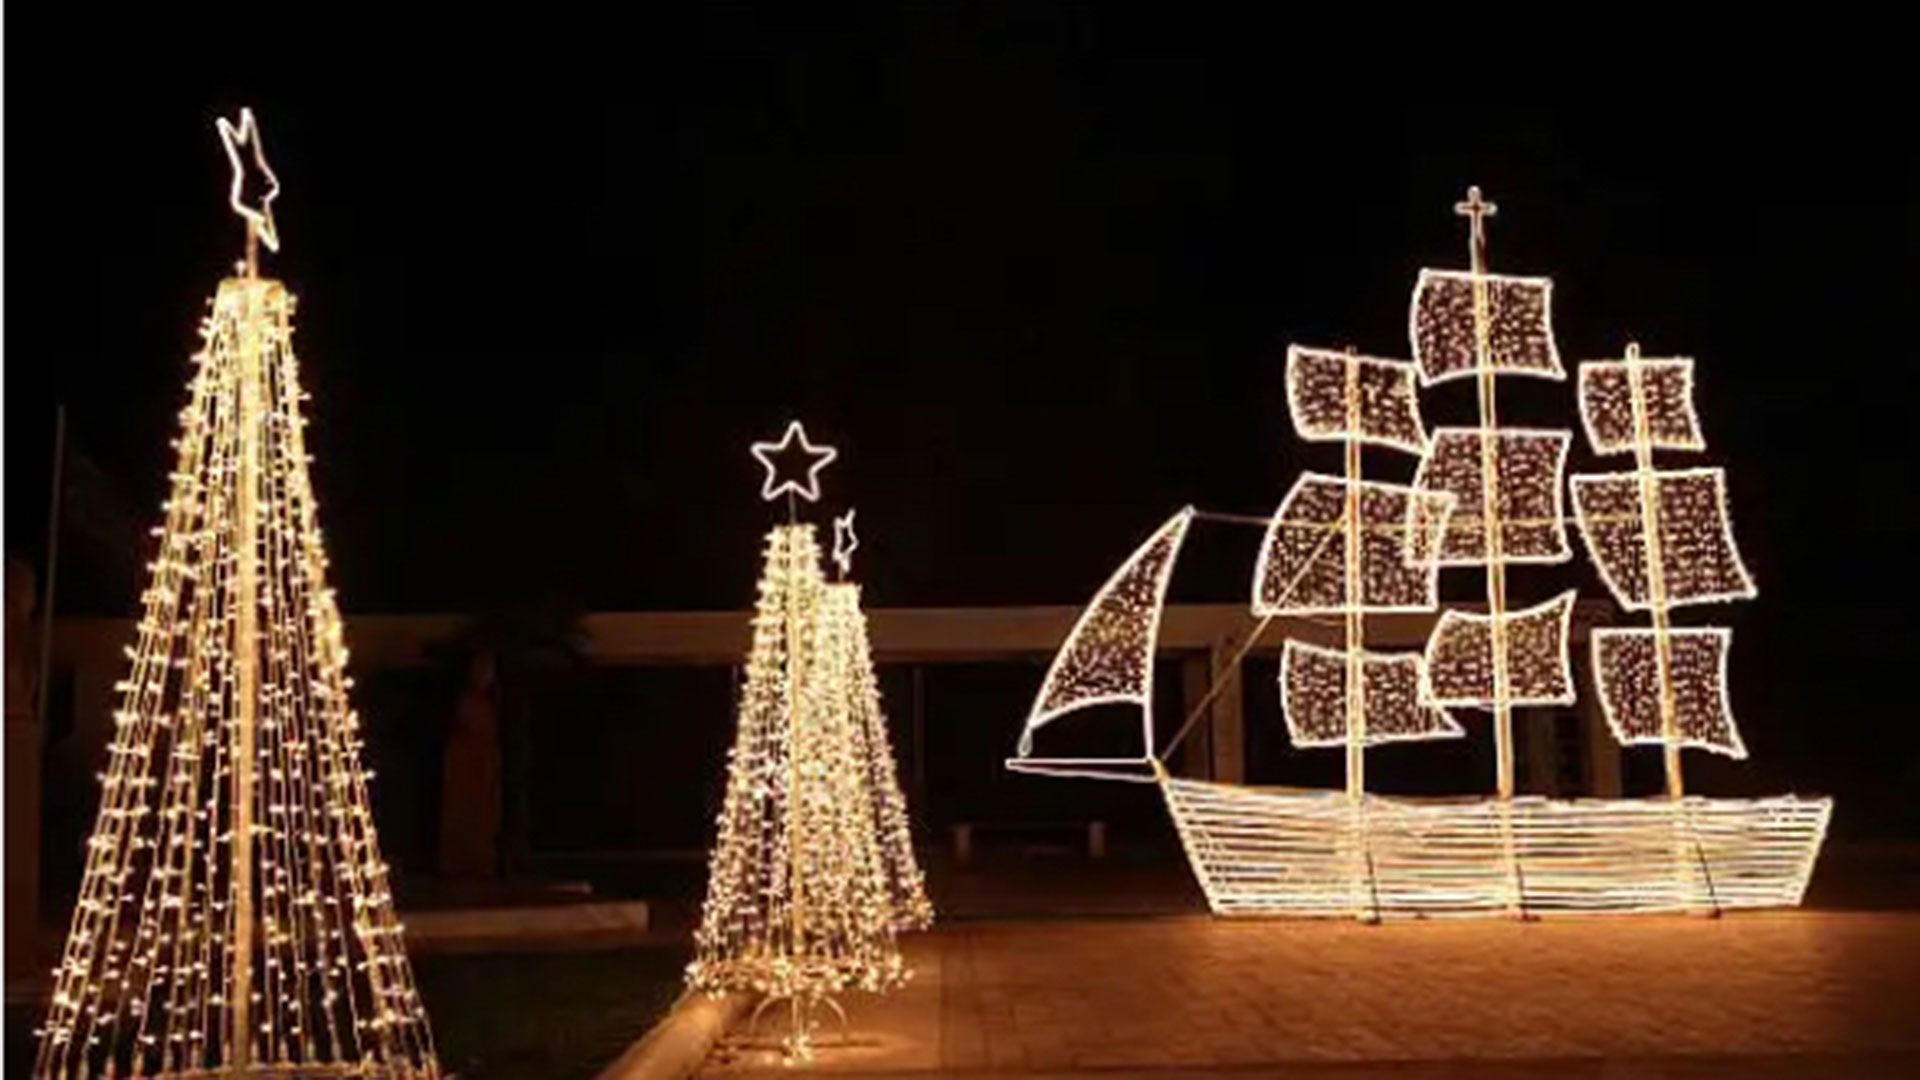 En Grecia, durante la temporada navideña abundan los adornos de embarcaciones con luces, que forma parte de la tradición del país